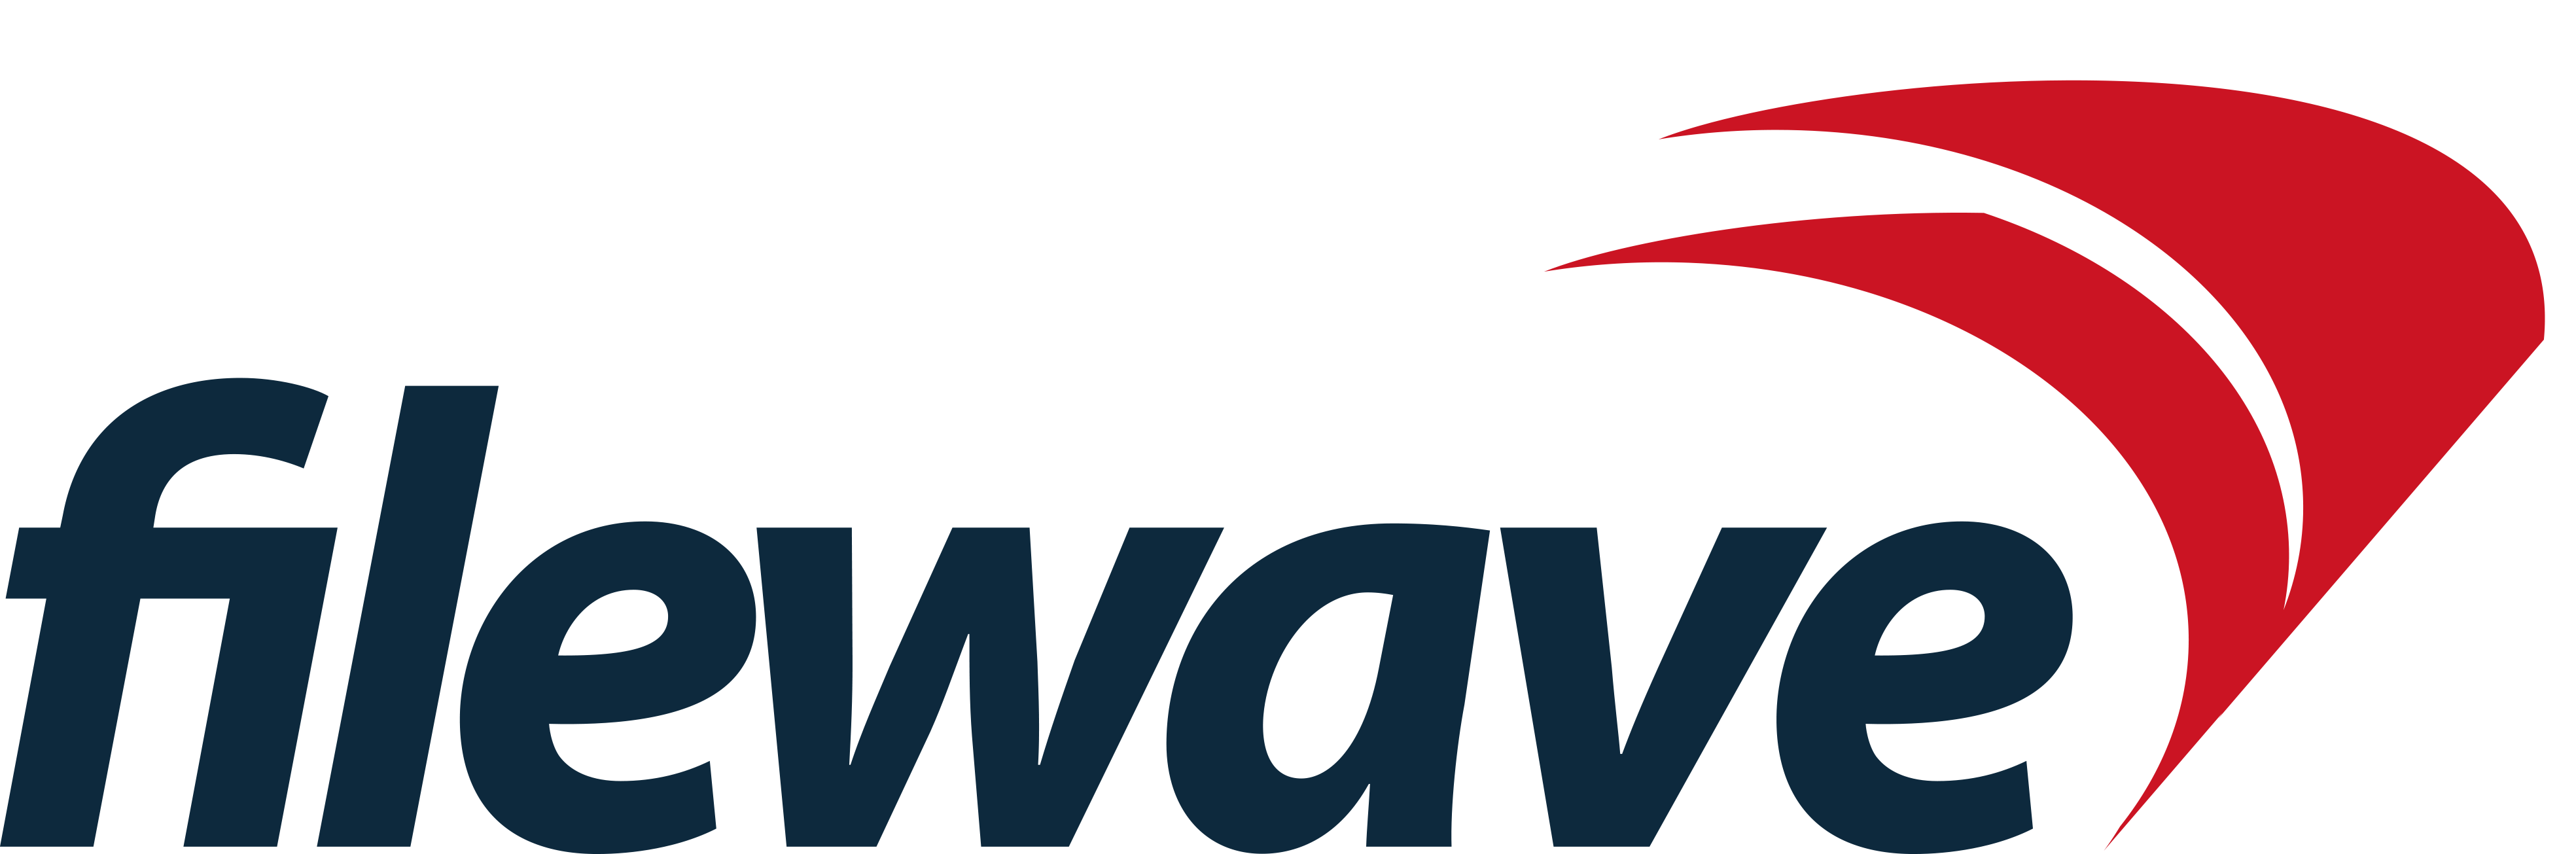 Filewave logo